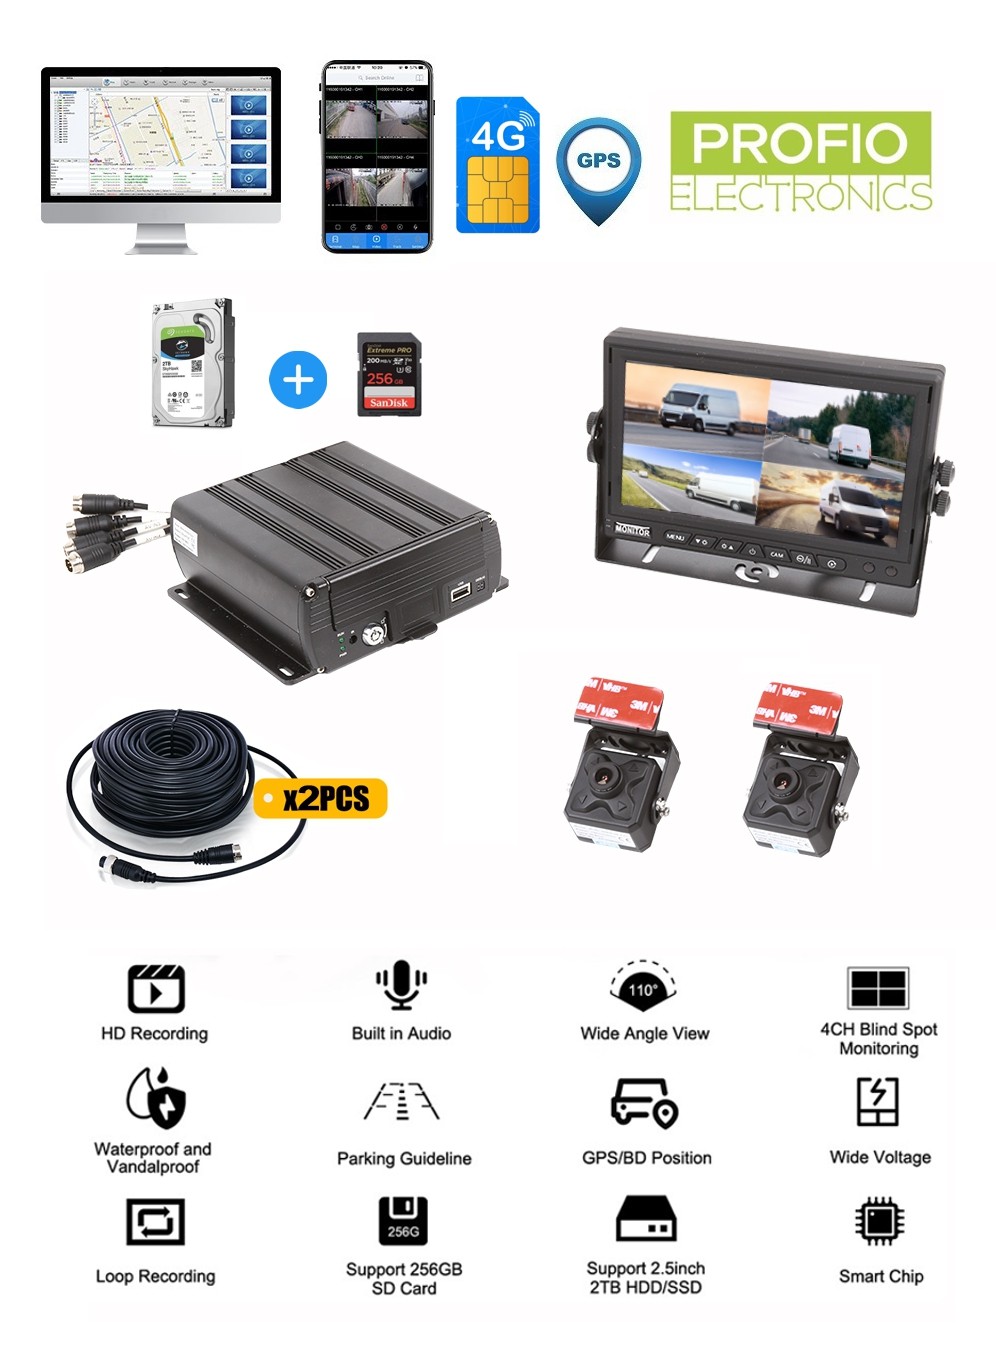 جهاز تسجيل فيديو رقمي للسيارات مراقبة حية وتسجيل 4 كاميرات ودعم شريحة اتصال 4G